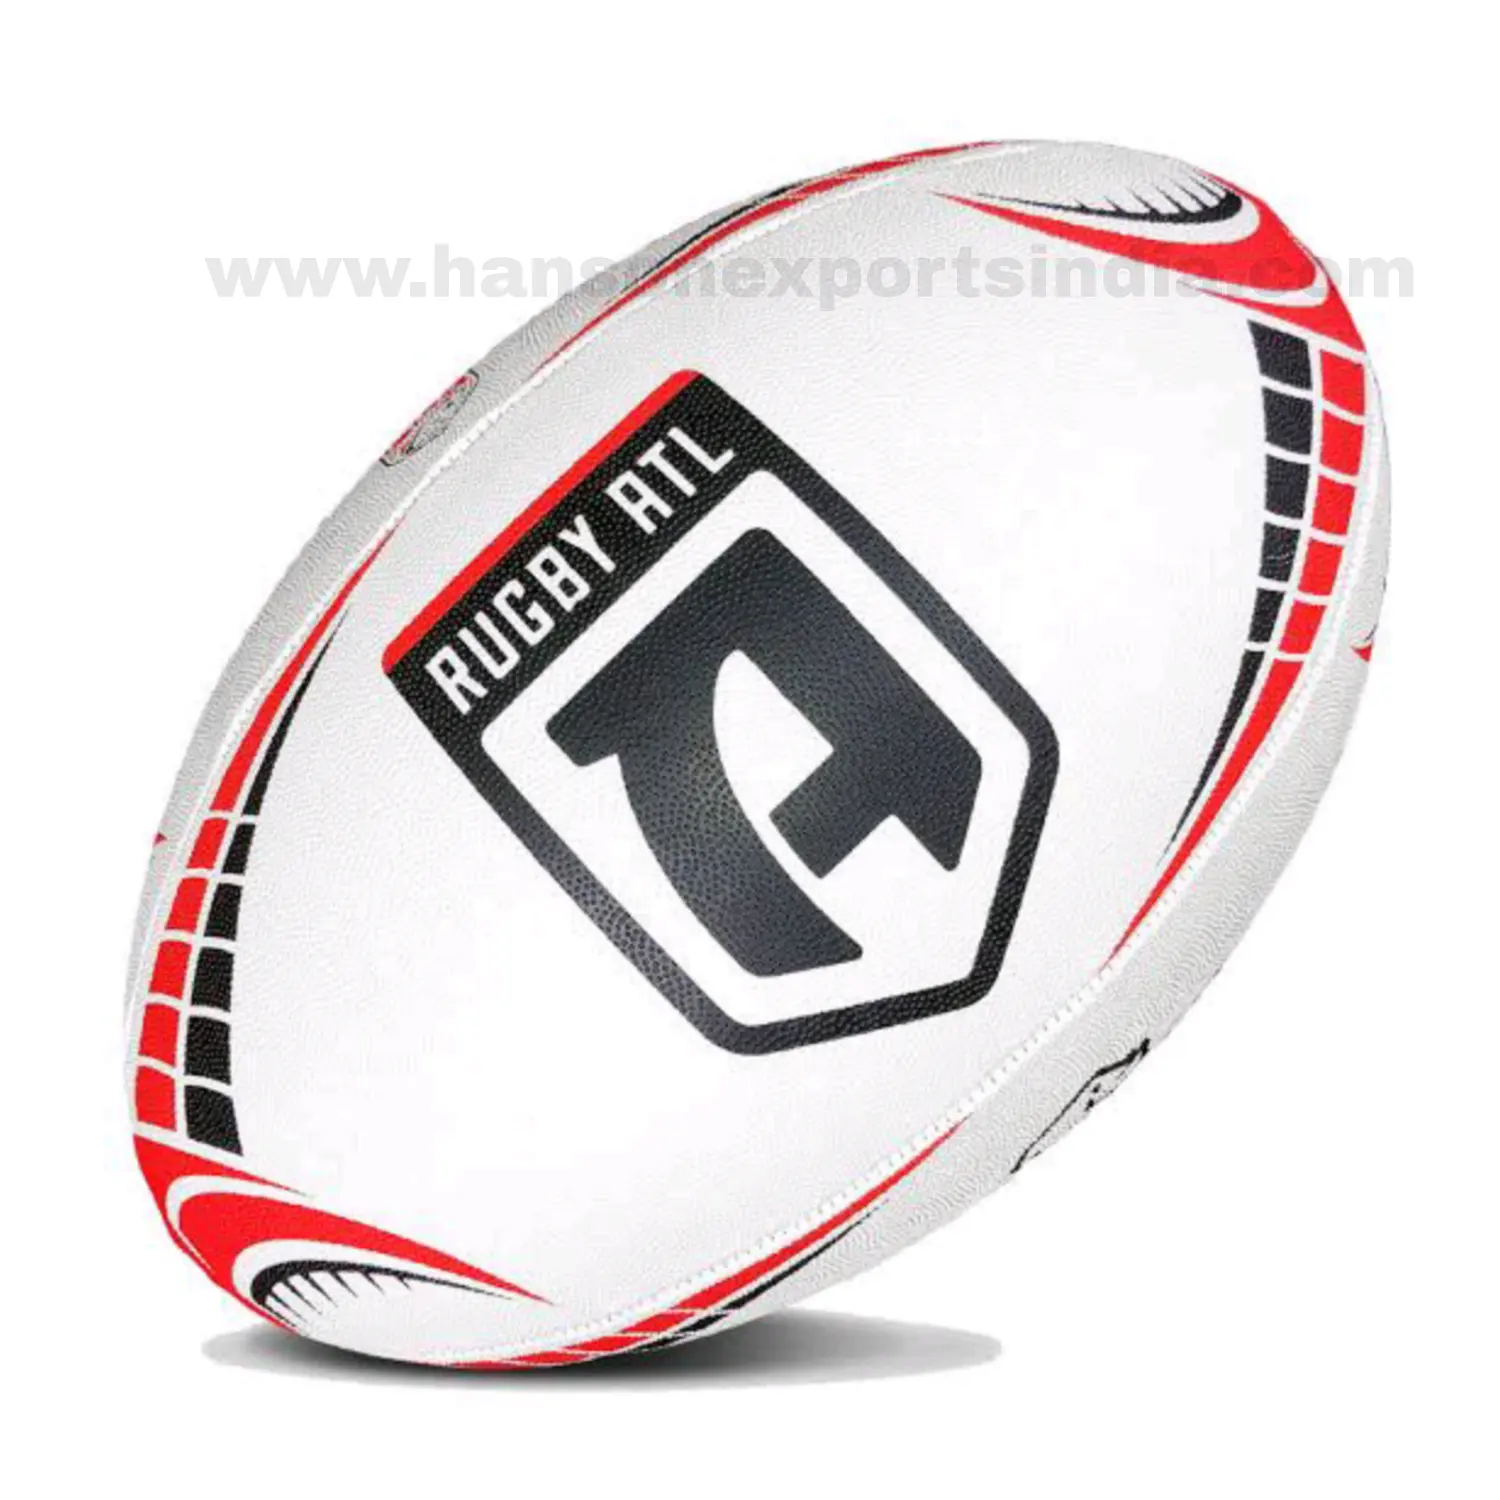 Мяч для регби под заказ, мяч для регби с логотипом, тренировочный мяч для регби с долговечным захватом, мяч для регби по низкой цене